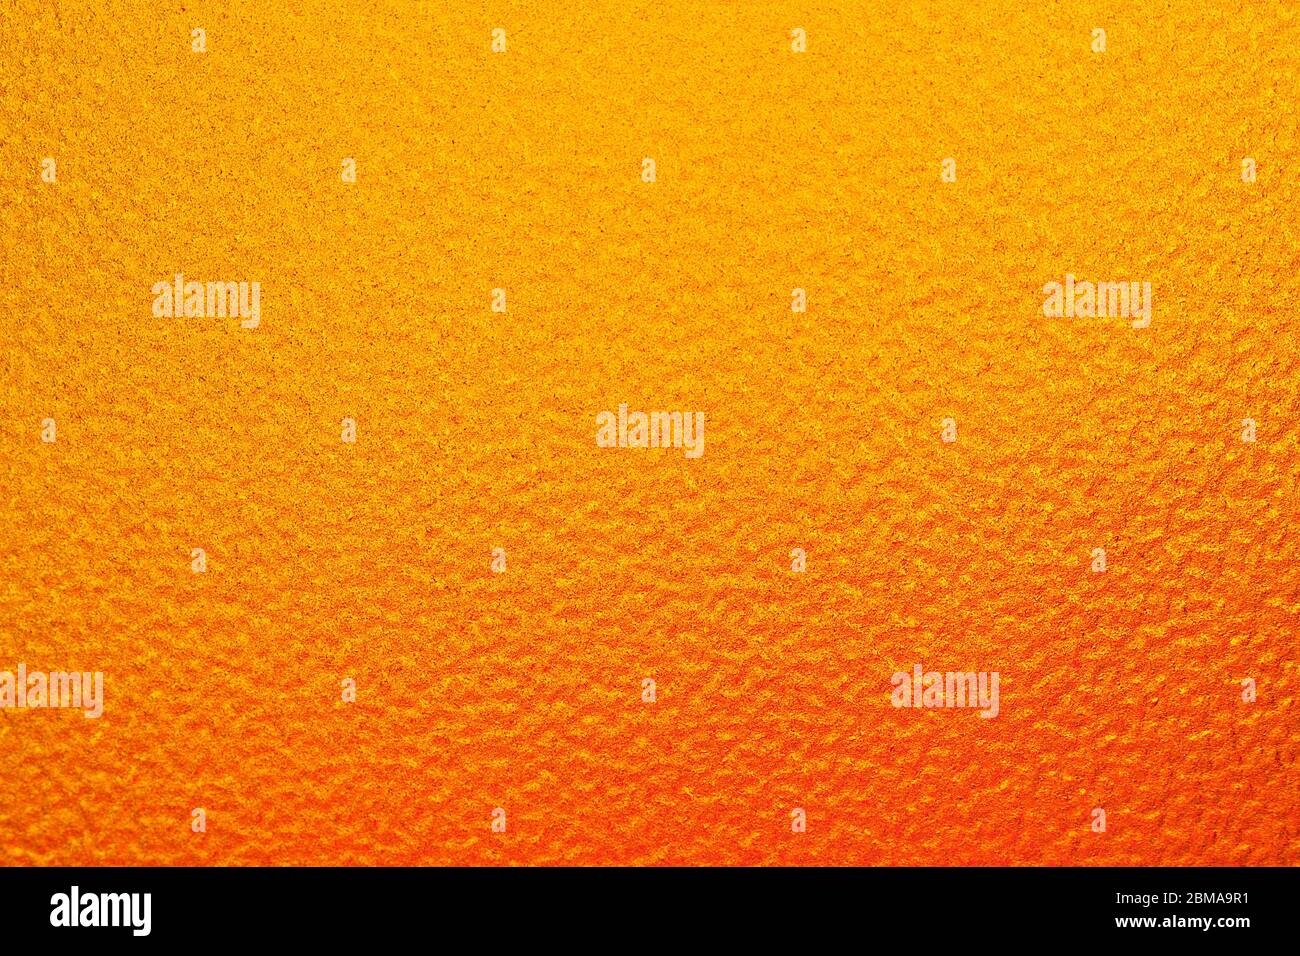 Imagen horizontal. El fondo que tiene sólo un ligero sombreado naranja a un color amarillo. Tiene una superficie áspera. Foto de stock